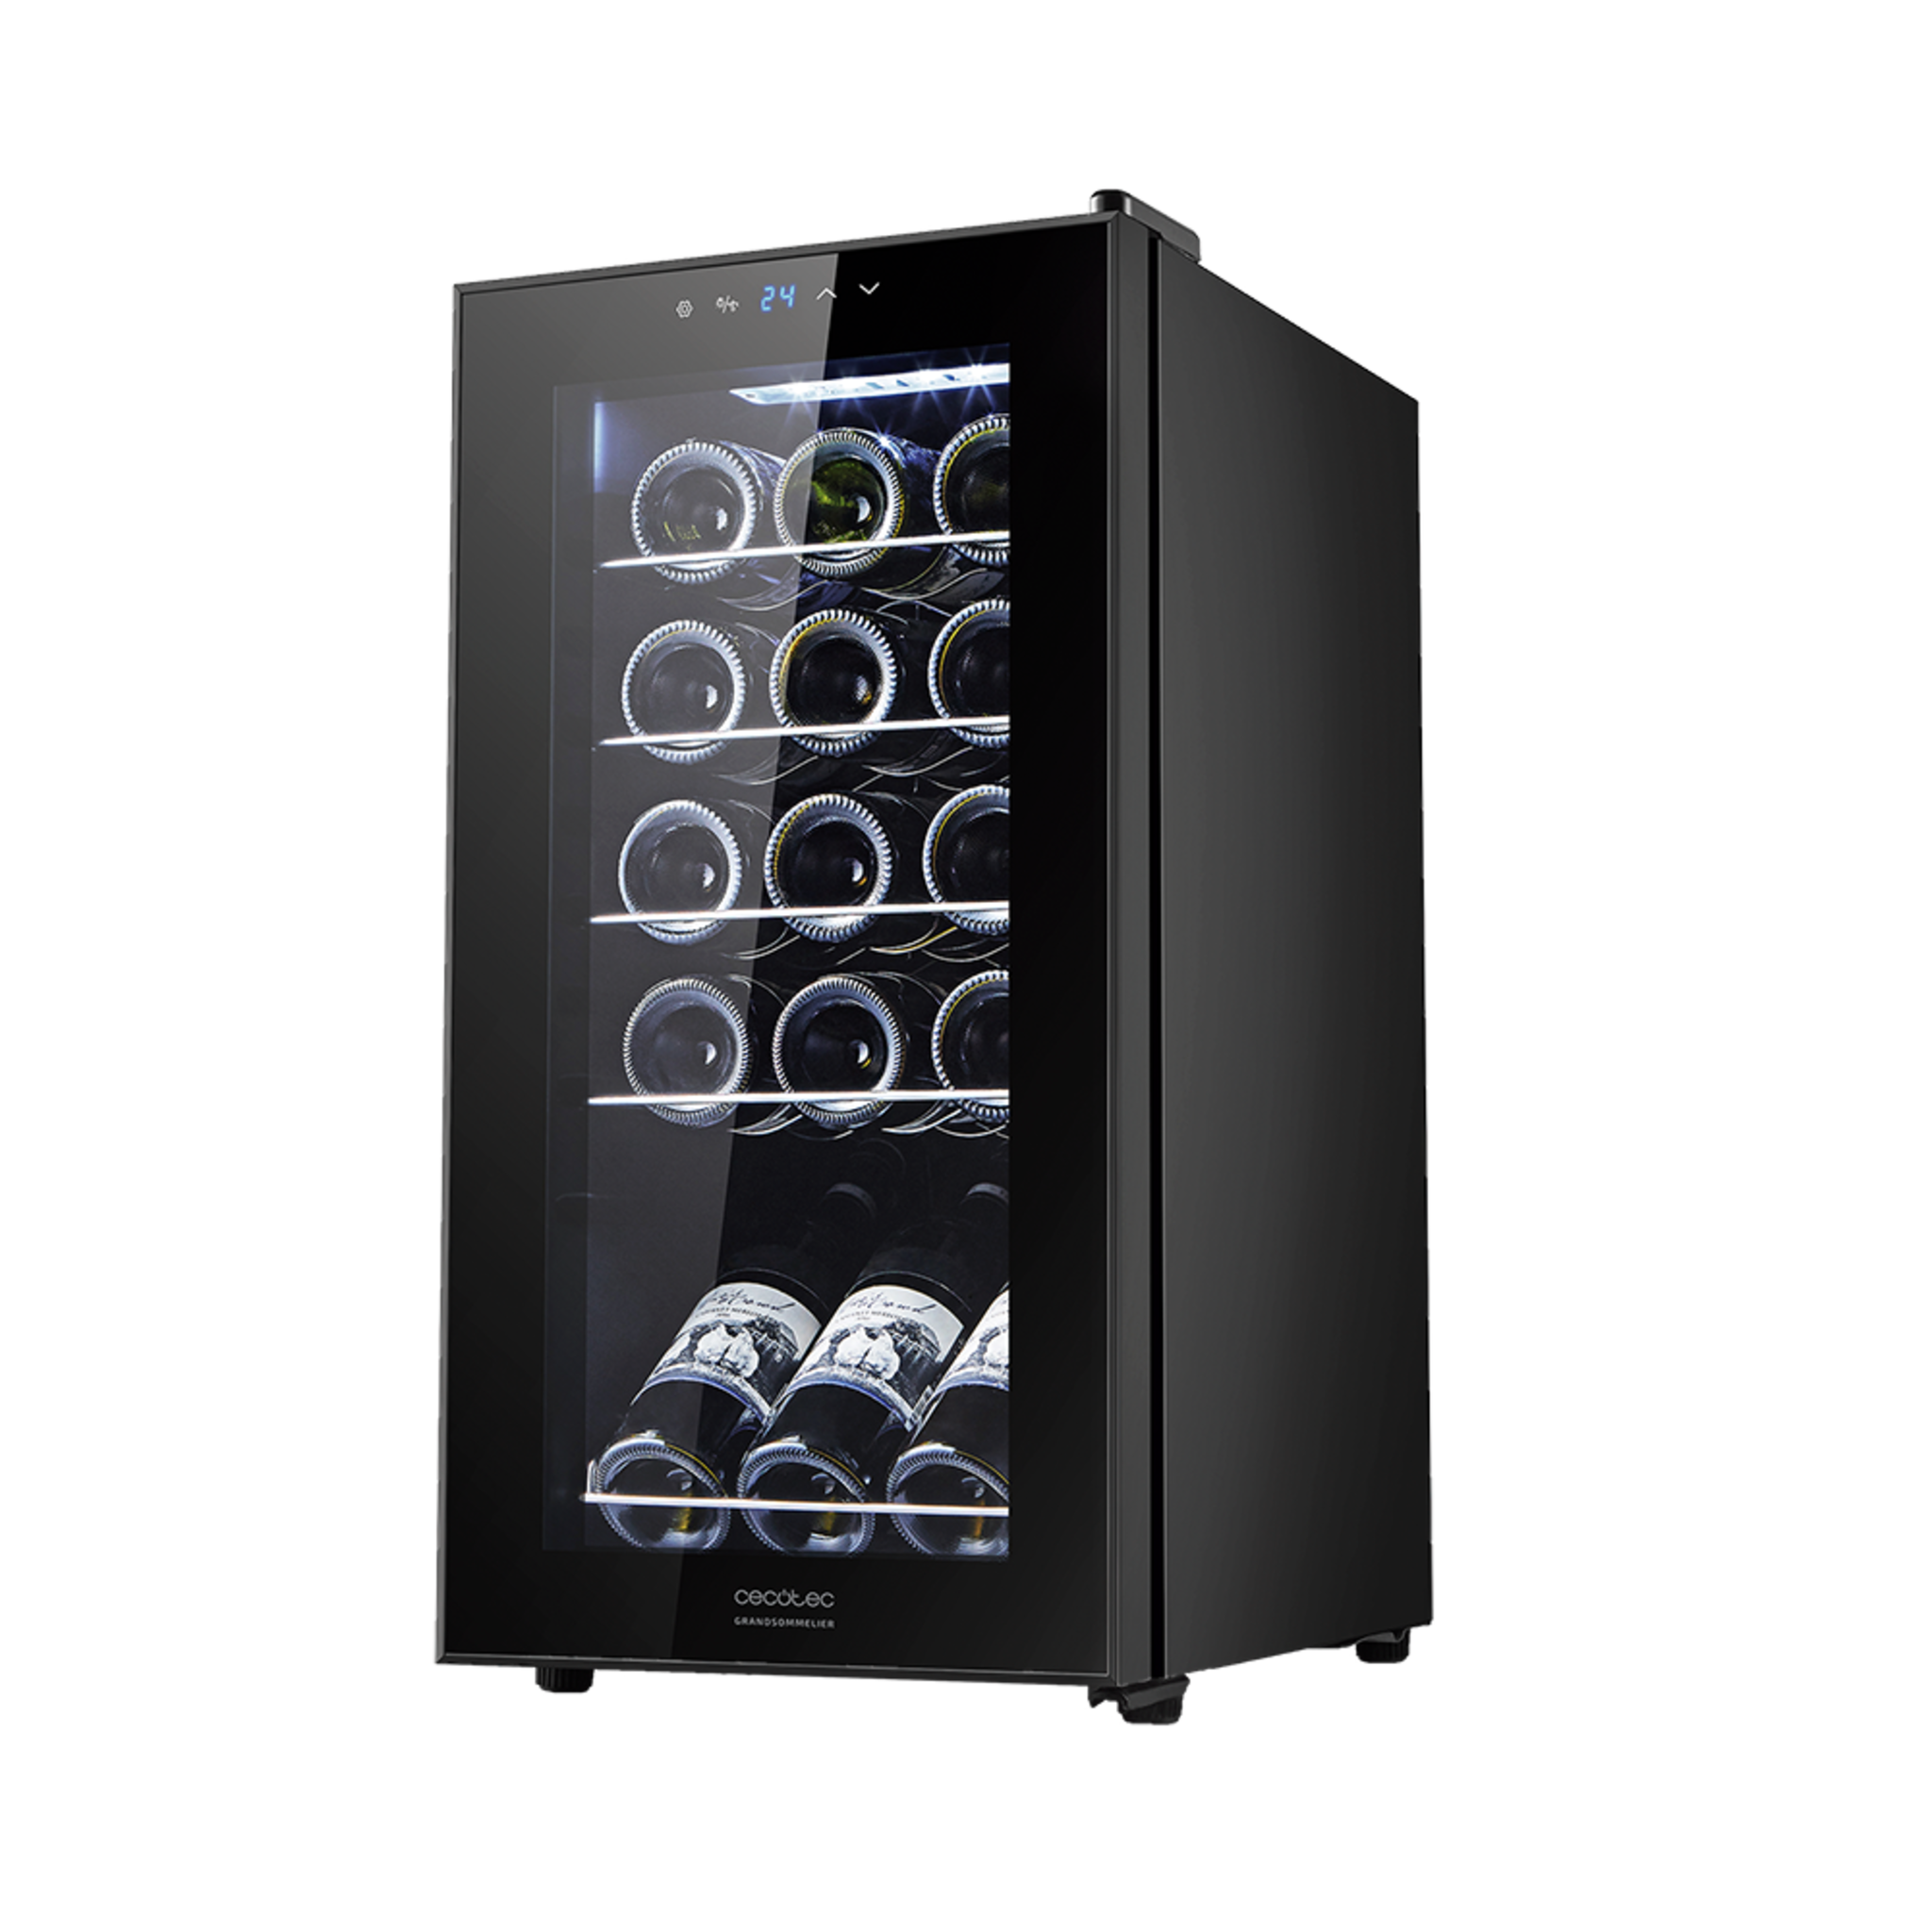 Cantinetta vino GrandSommelier 15000 Black Compressor. 15 bottiglie, compressore, rendimento elevato garantito, temperatura regolabile e luce LED interna